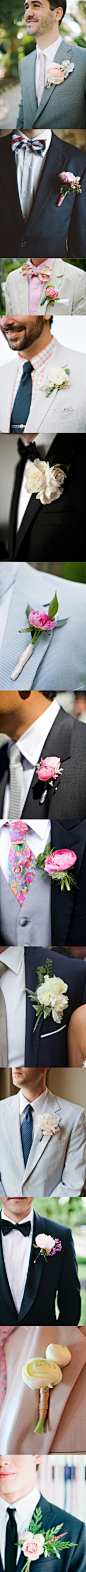 #新郎#新娘有超美的牡丹手捧花，那不妨也在新郎胸花中加入这靓丽的元素，让婚礼看上去更加和谐哦~ 更多: http://www.lovewith.me/share/detail/all/30978